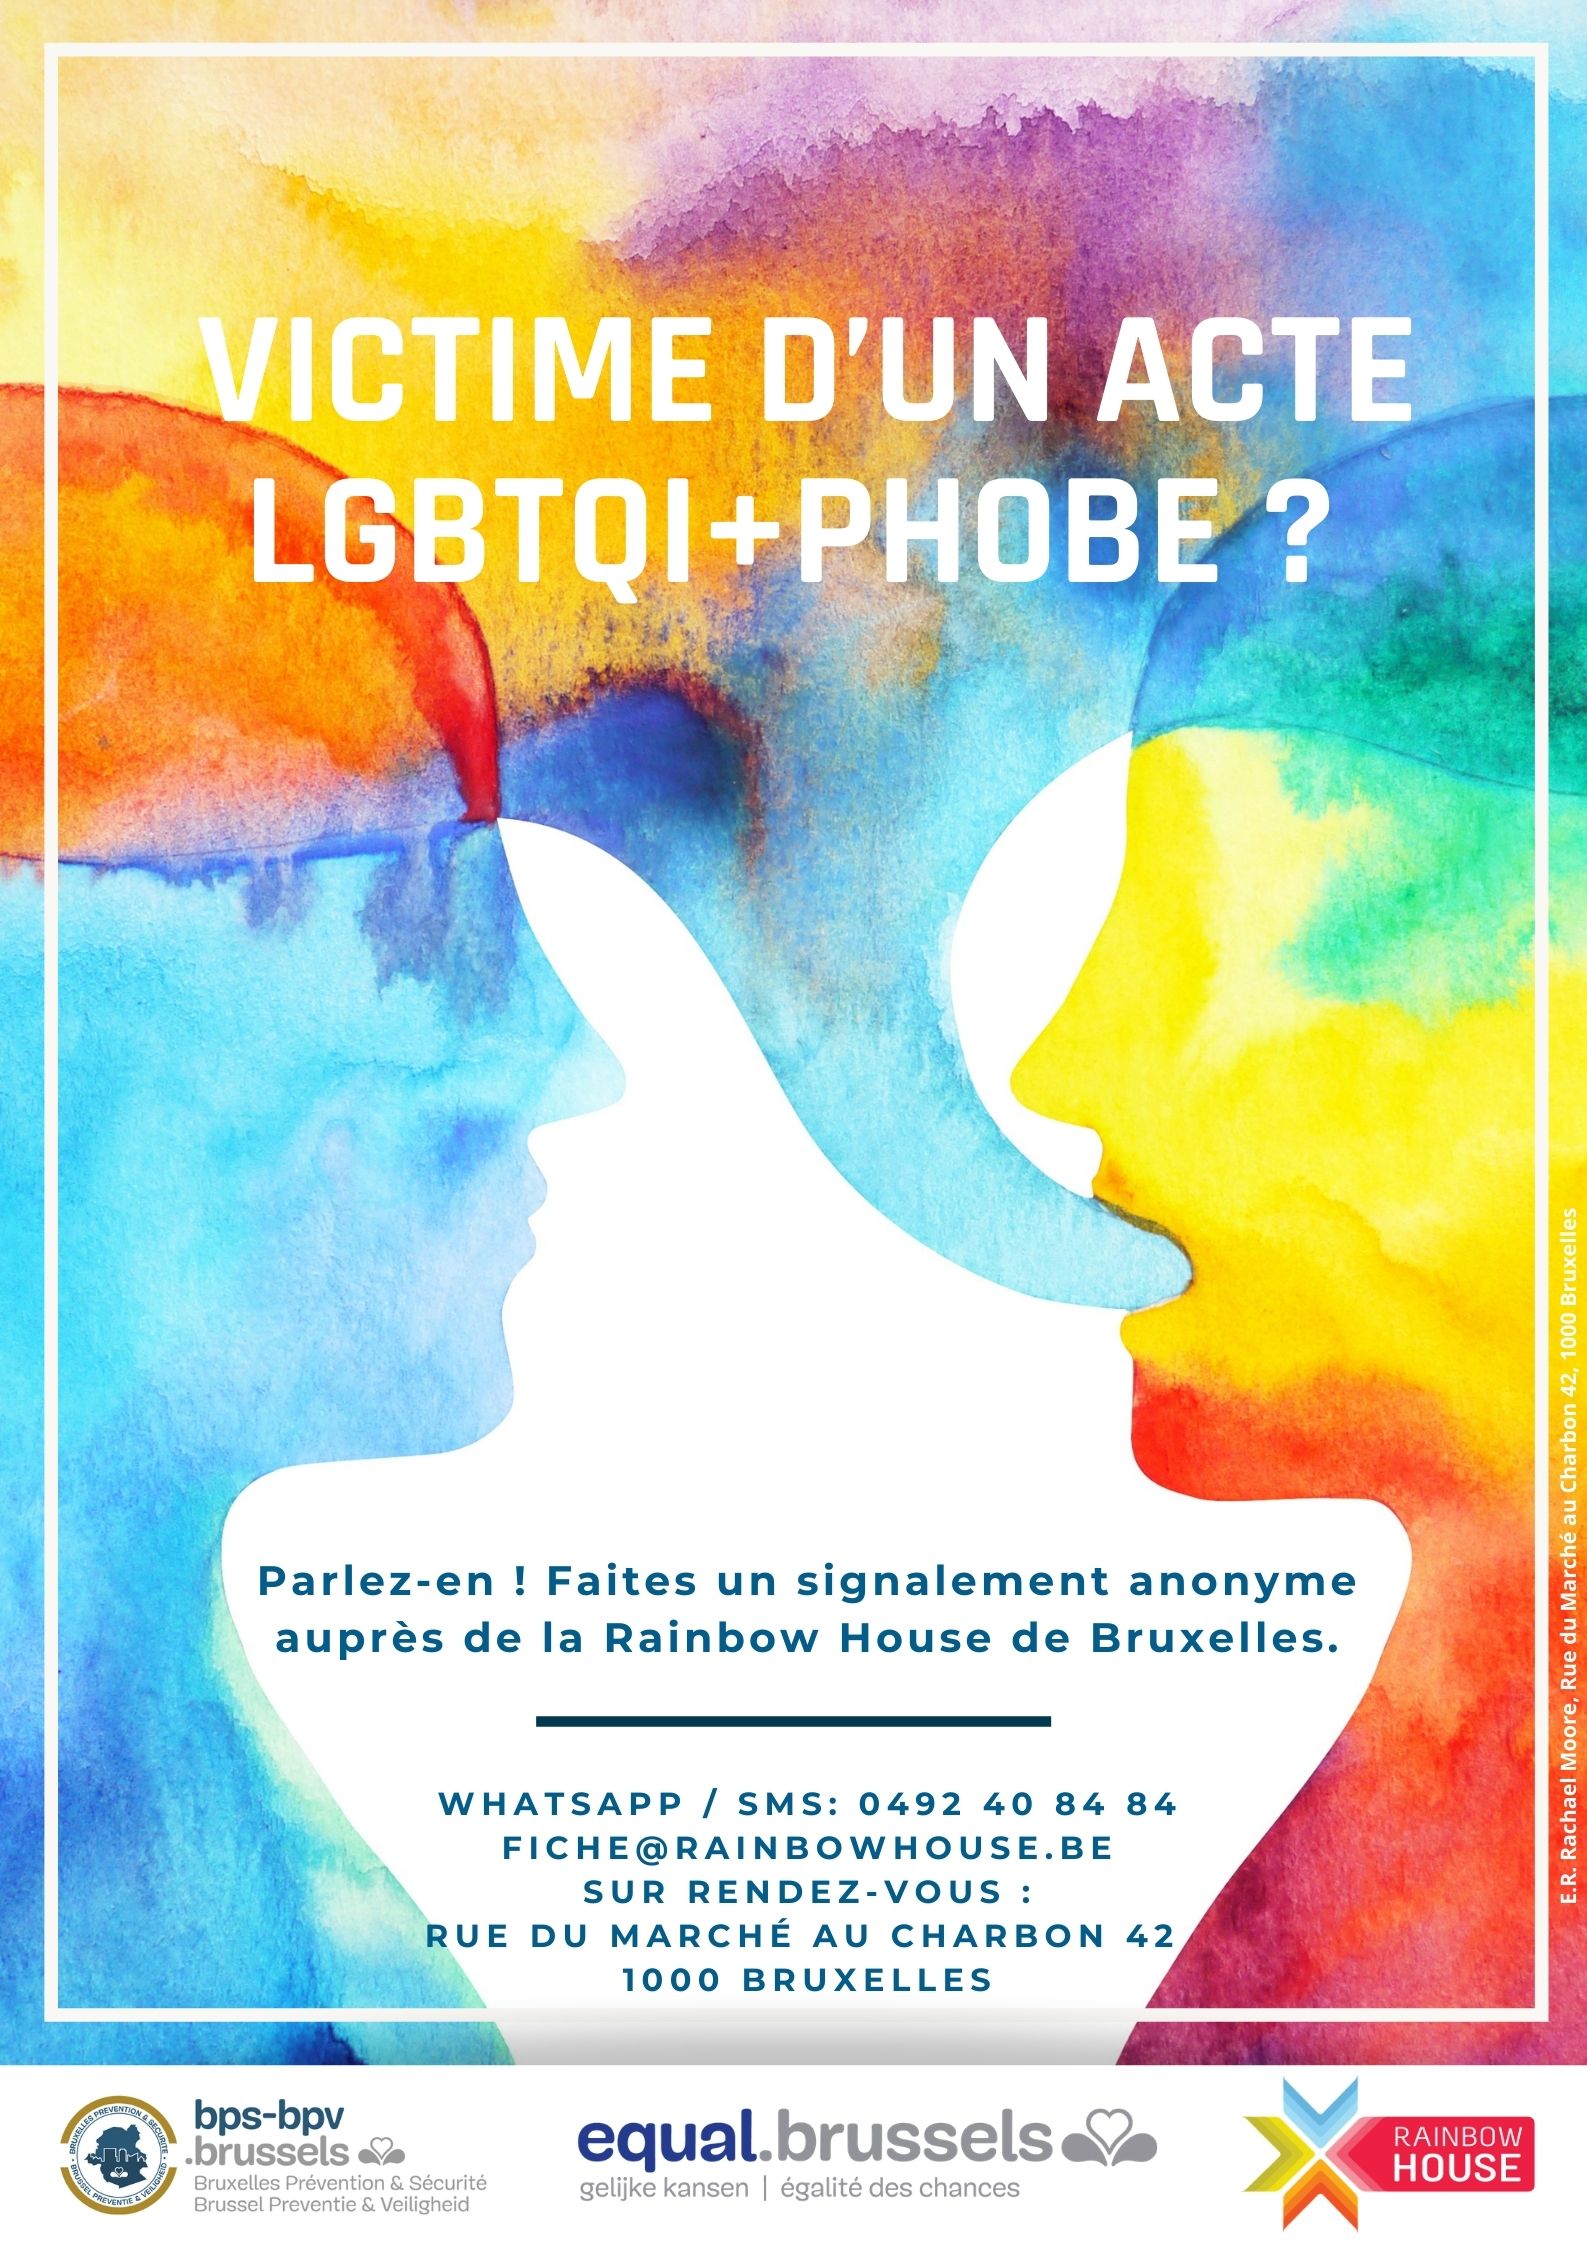 Collecte de données sur les violences LGBTQI+phobes en Région de Bruxelles-Capitale